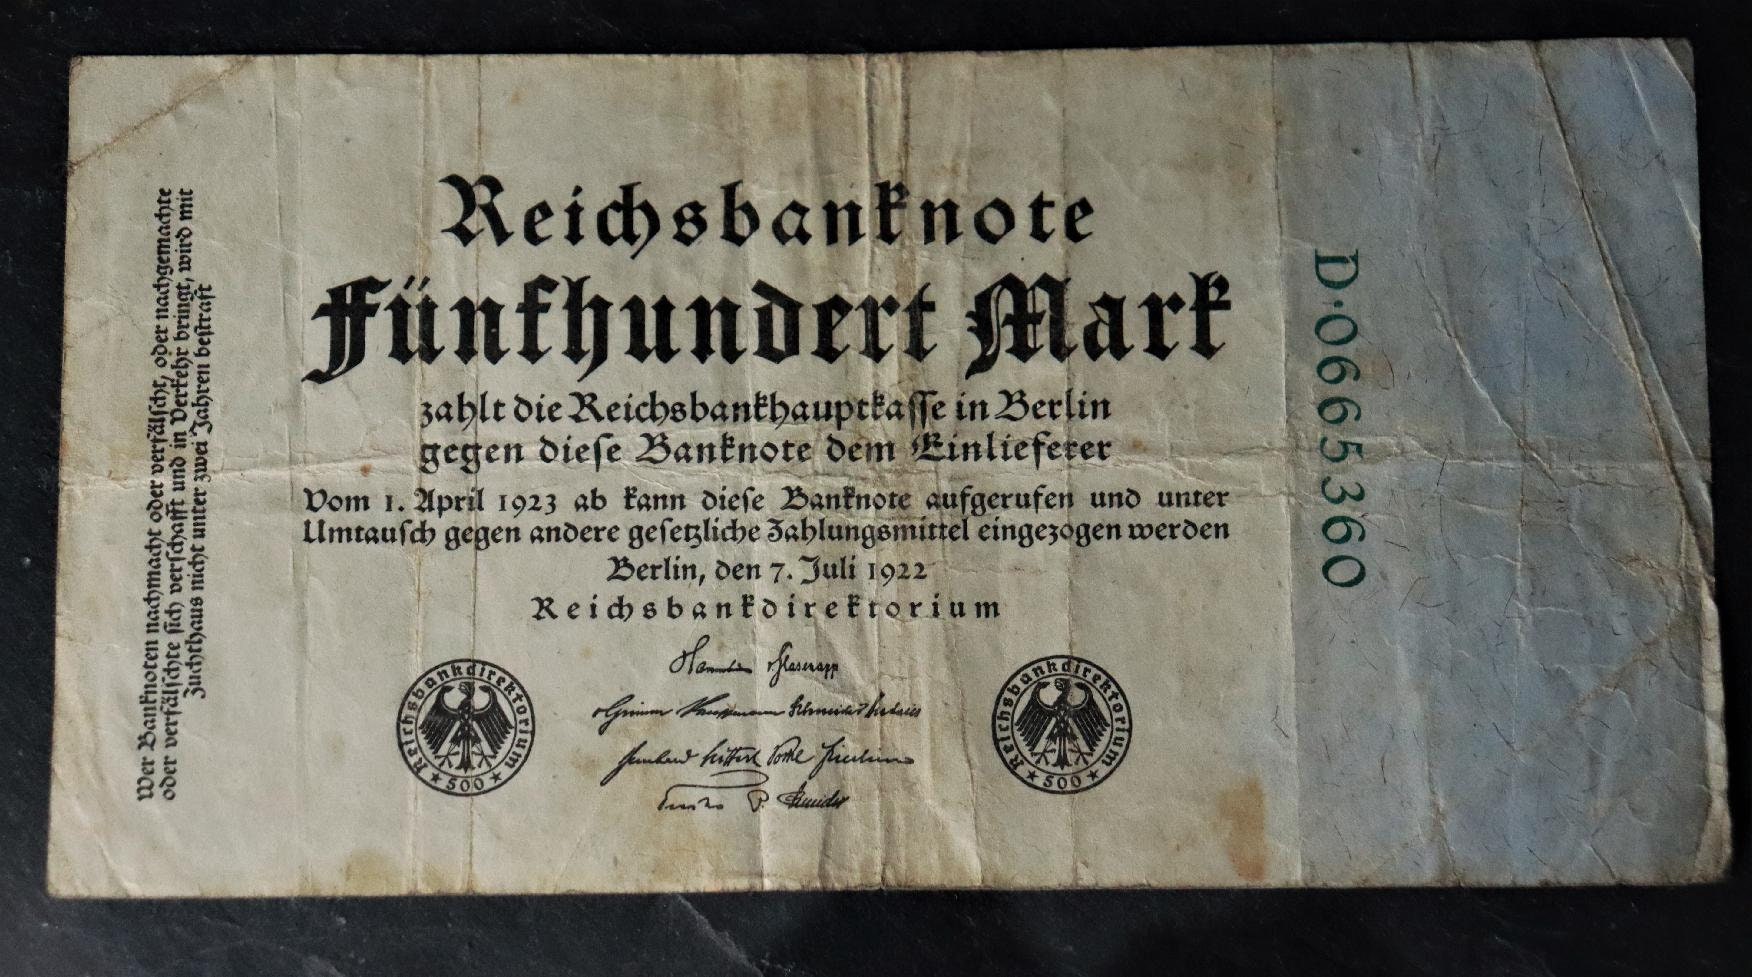 Reichsbanknote 500 Marks 1922 D0665360 / 1D